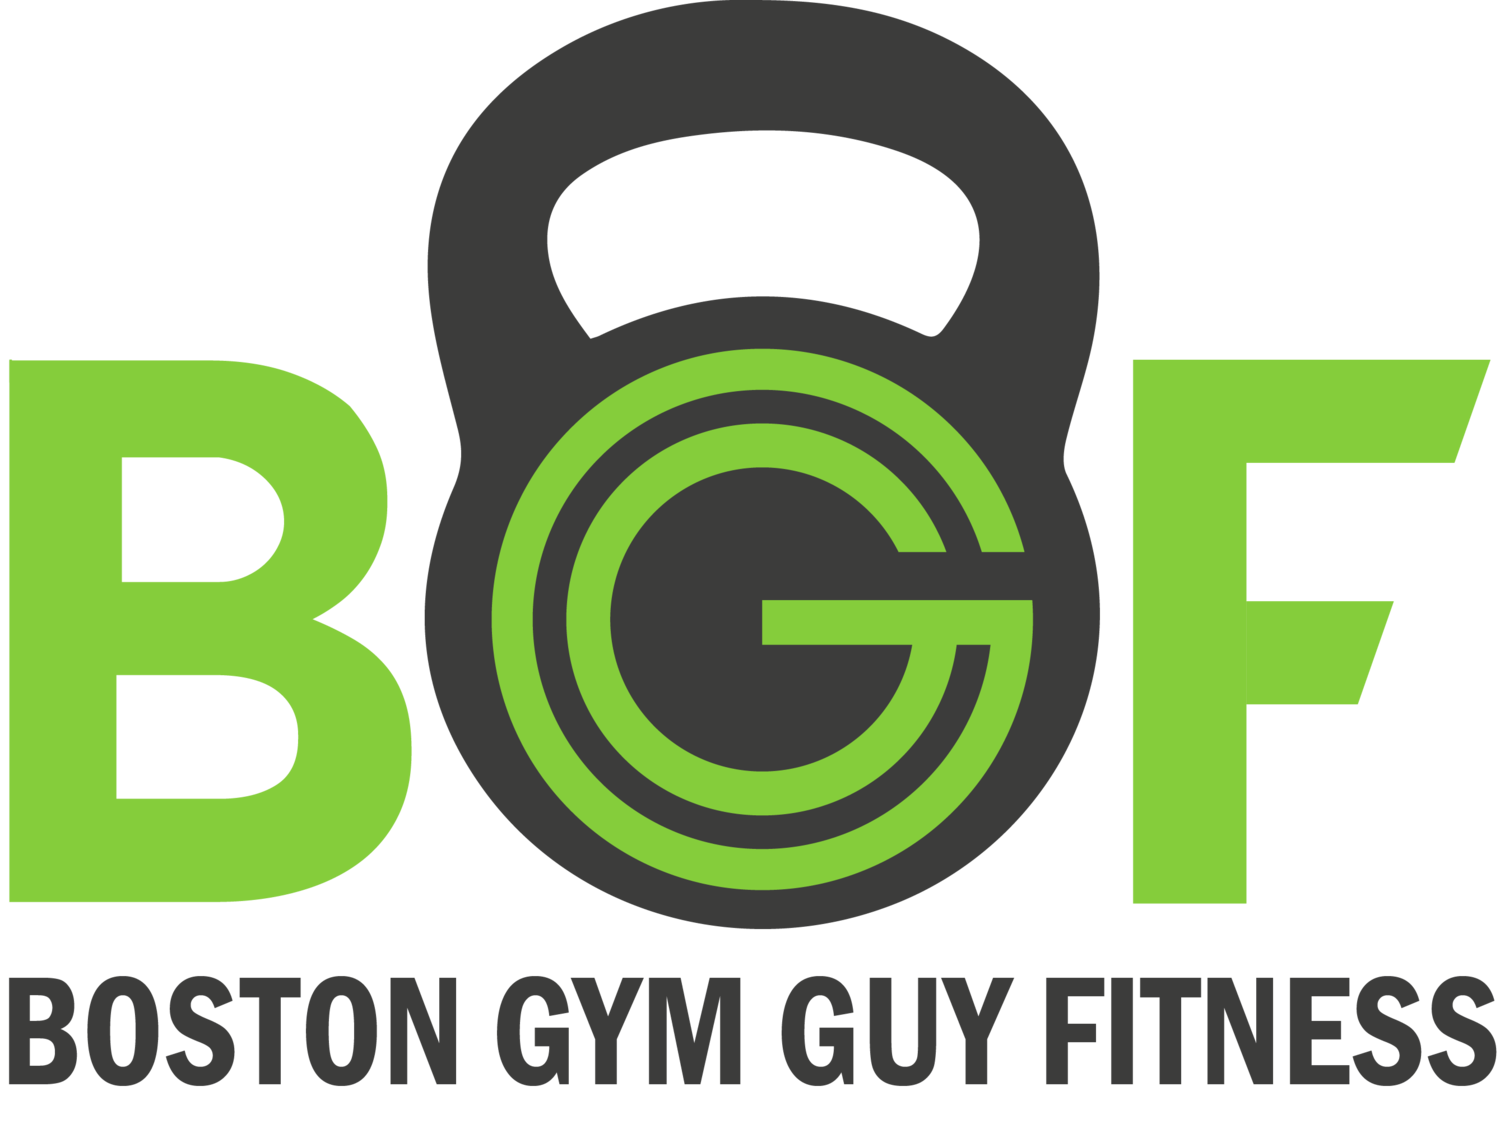 Boston Gym Guy Fitness